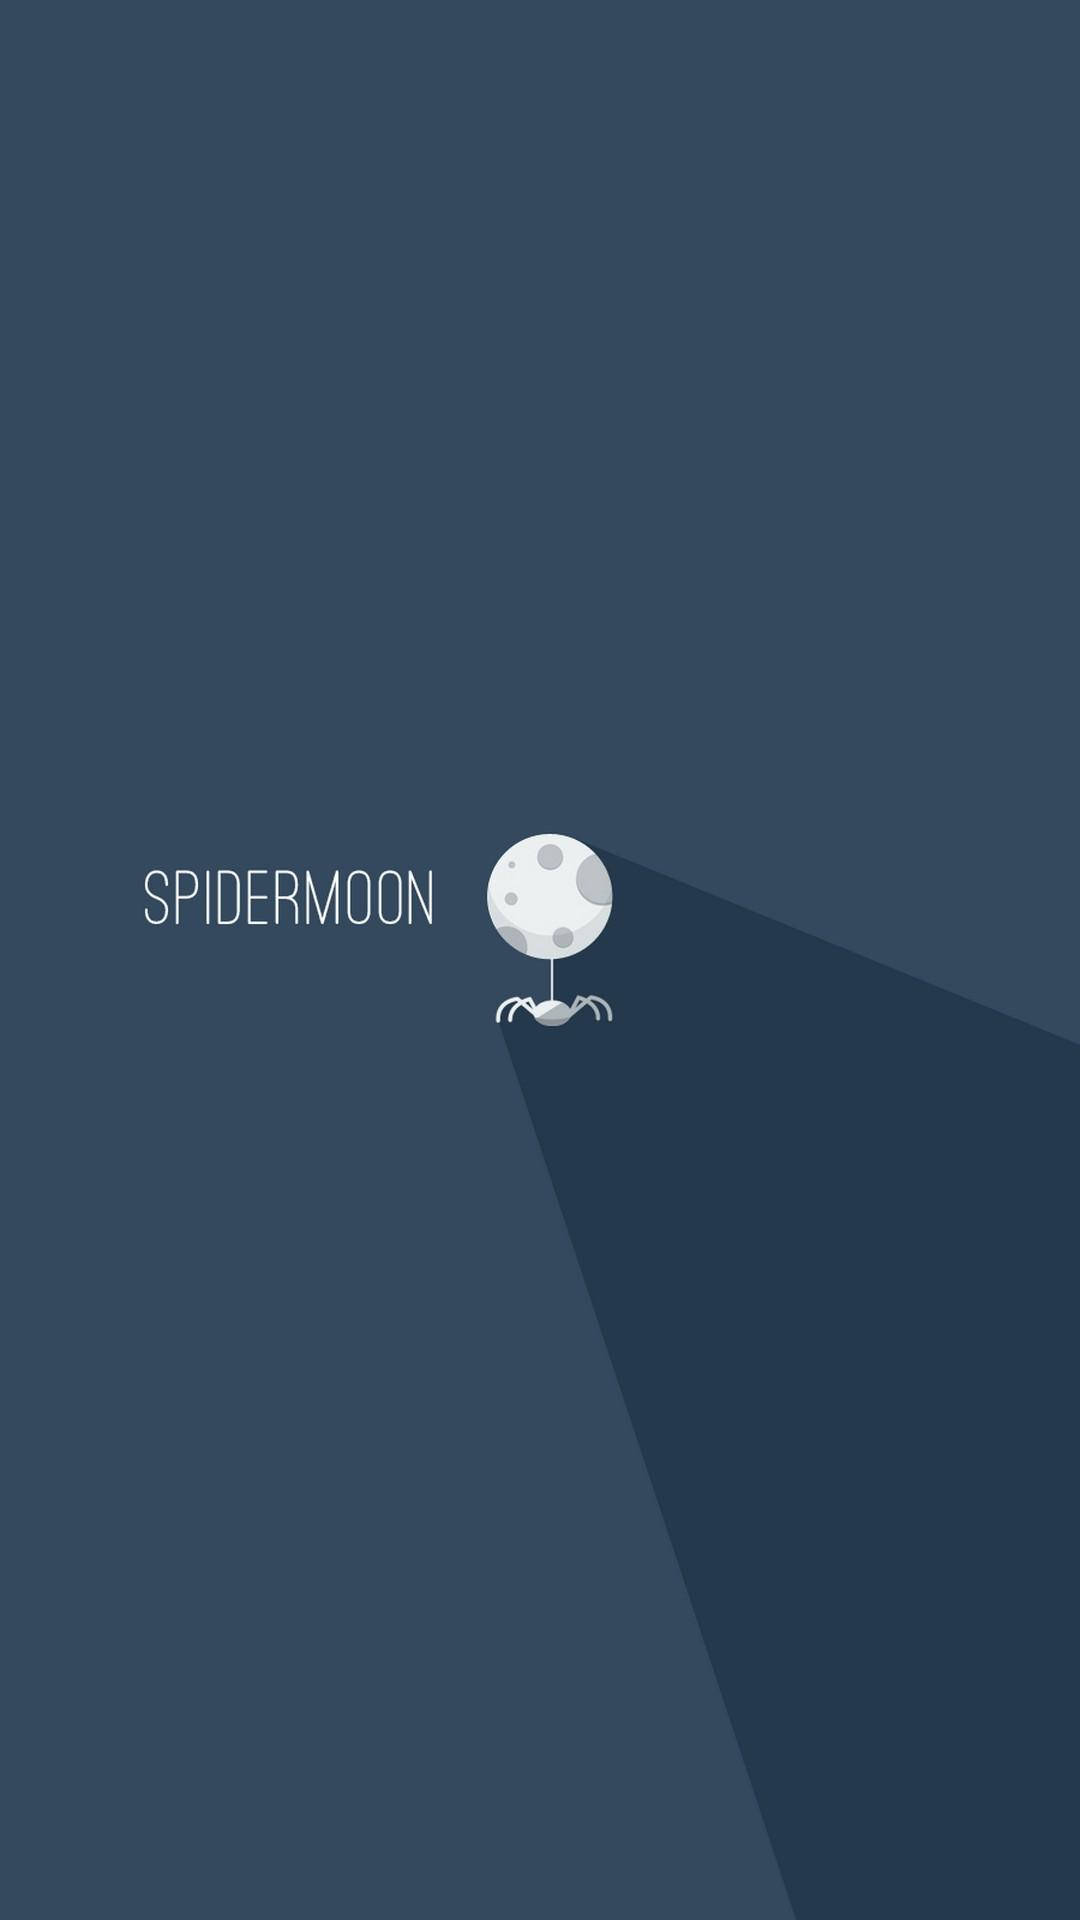 Spidermoon Minimalist Android Wallpaper